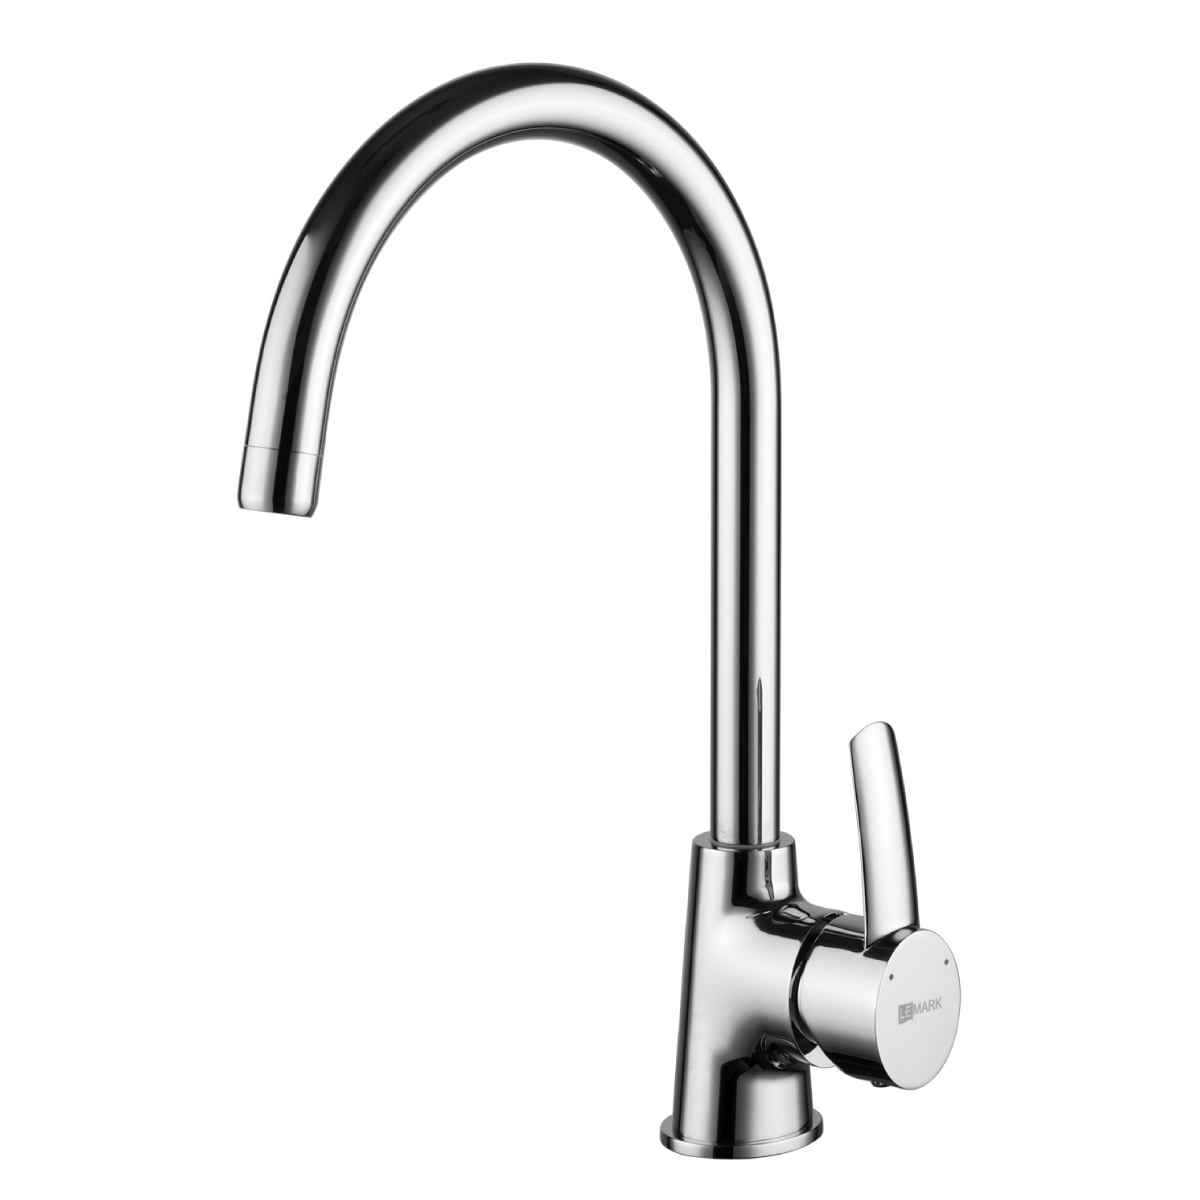 LM3255C Kitchen faucet
with swivel spout